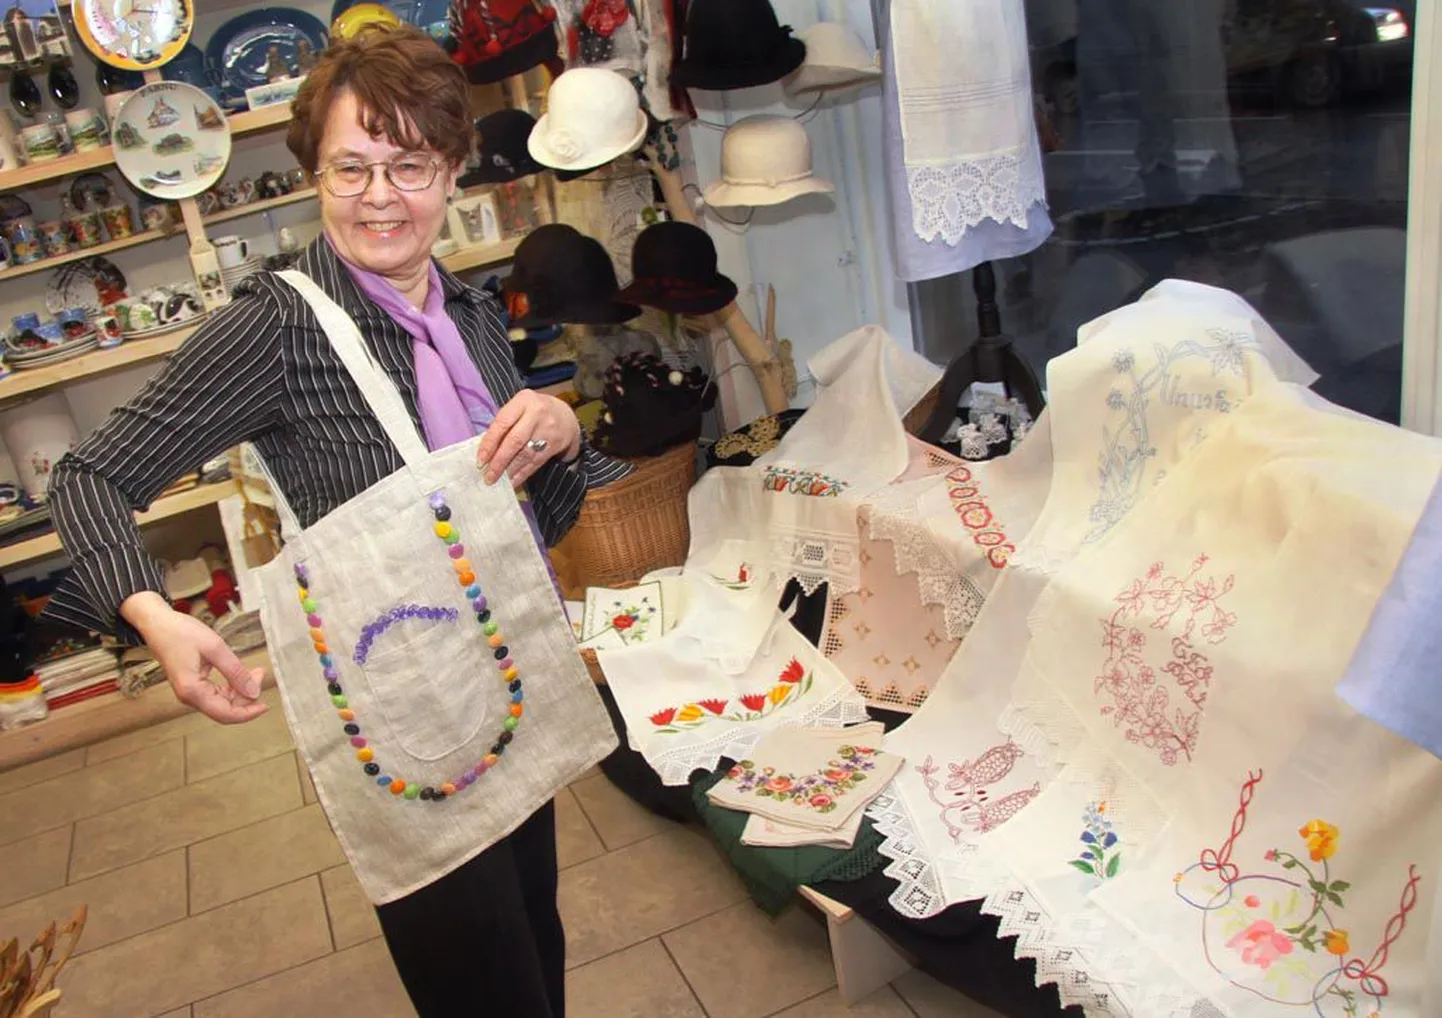 “Noortele ja keskkonnasäästlikele tarbijatele,” ütleb Pärnu käsitöösalongis müüginäituse avanud Helga Koger nööpidega kaunistatud kotti demonstreerides.